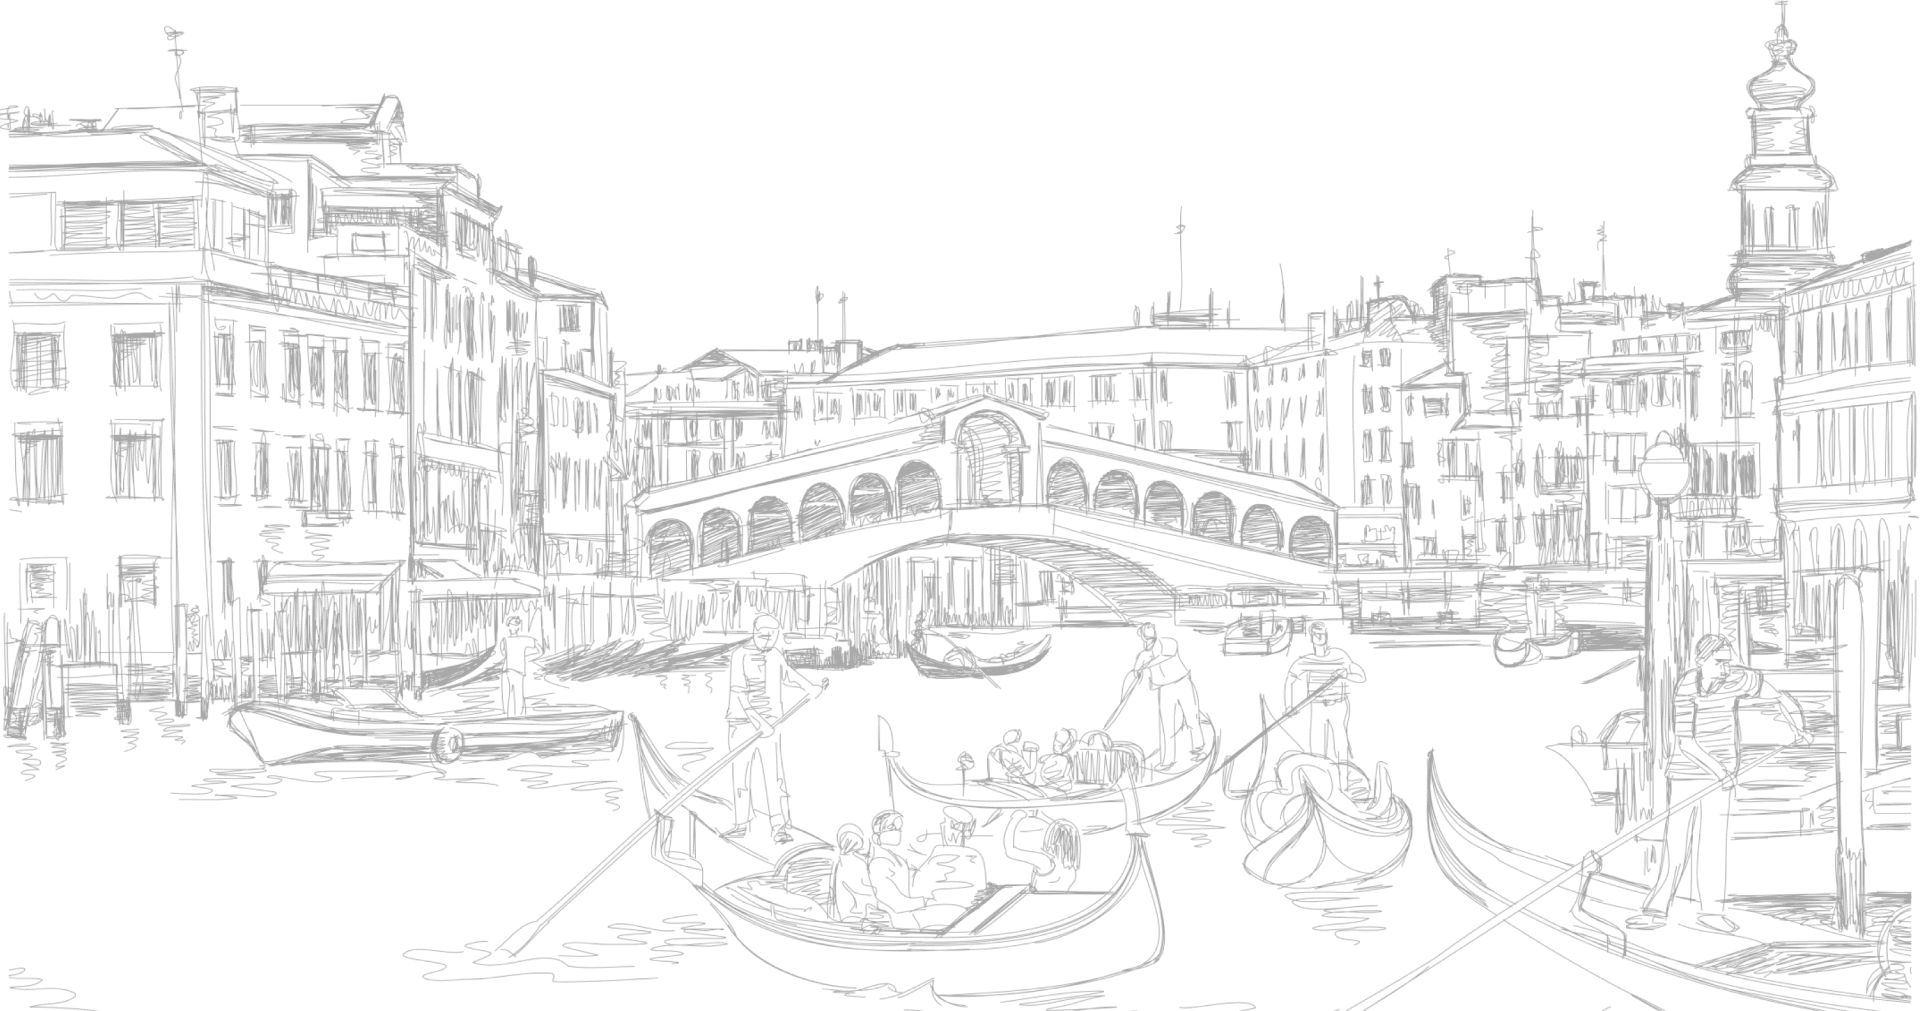 Venice - một trong những thành phố đẹp nhất trên thế giới với những kênh nước mênh mông và kiến trúc cổ đại tuyệt đẹp. Hãy khám phá những điểm đến tuyệt vời tại Venice và trải nghiệm những khoảnh khắc đáng nhớ. Điều hấp dẫn của Venice là gì đó bạn không thể bỏ qua!